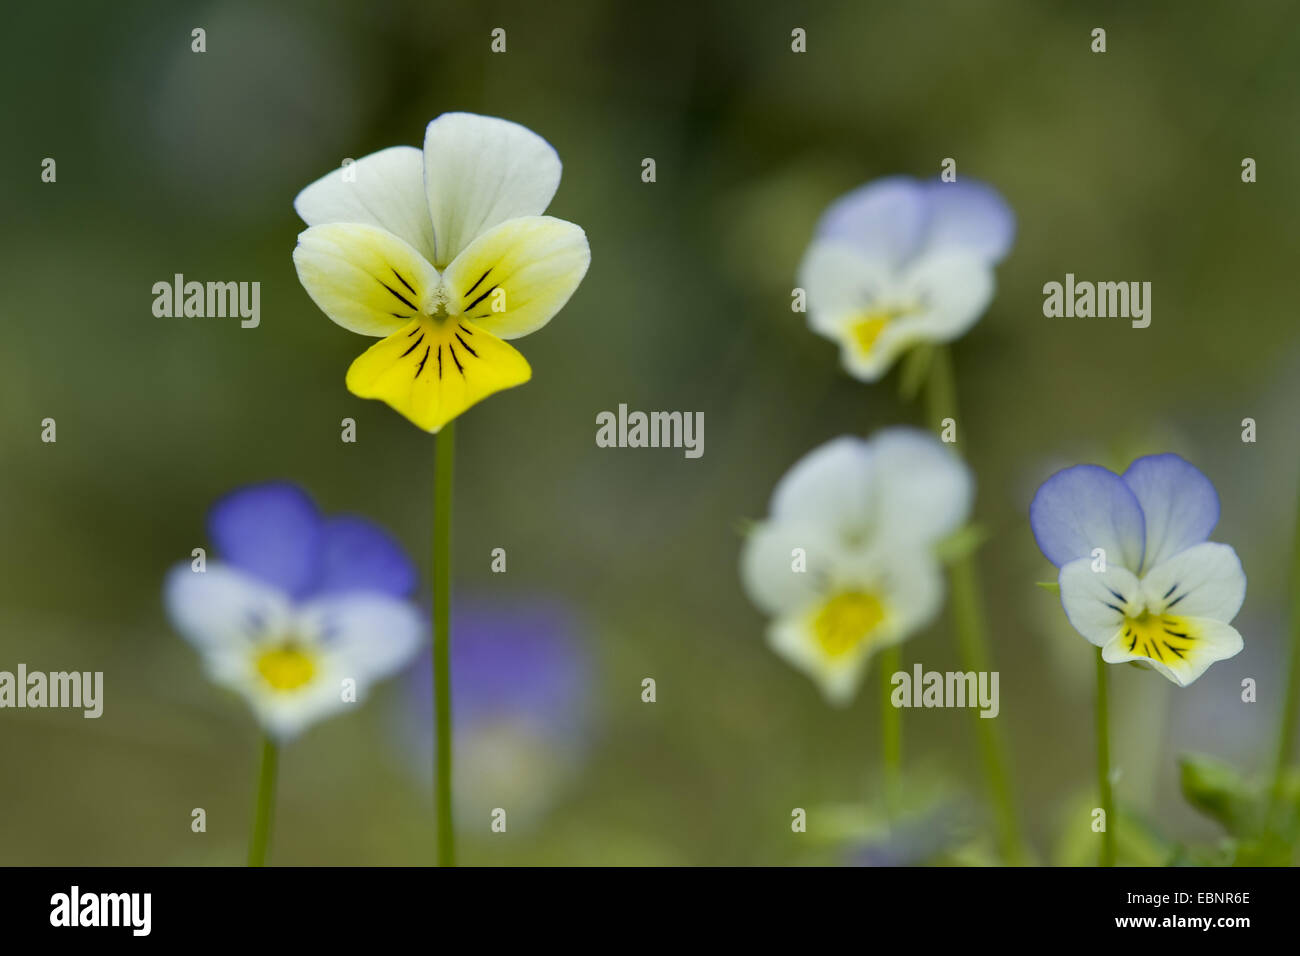 Cuore di semplicità, heartsease, wild pansy, a tre colori (Viola Viola tricolore), fioritura, Germania Foto Stock